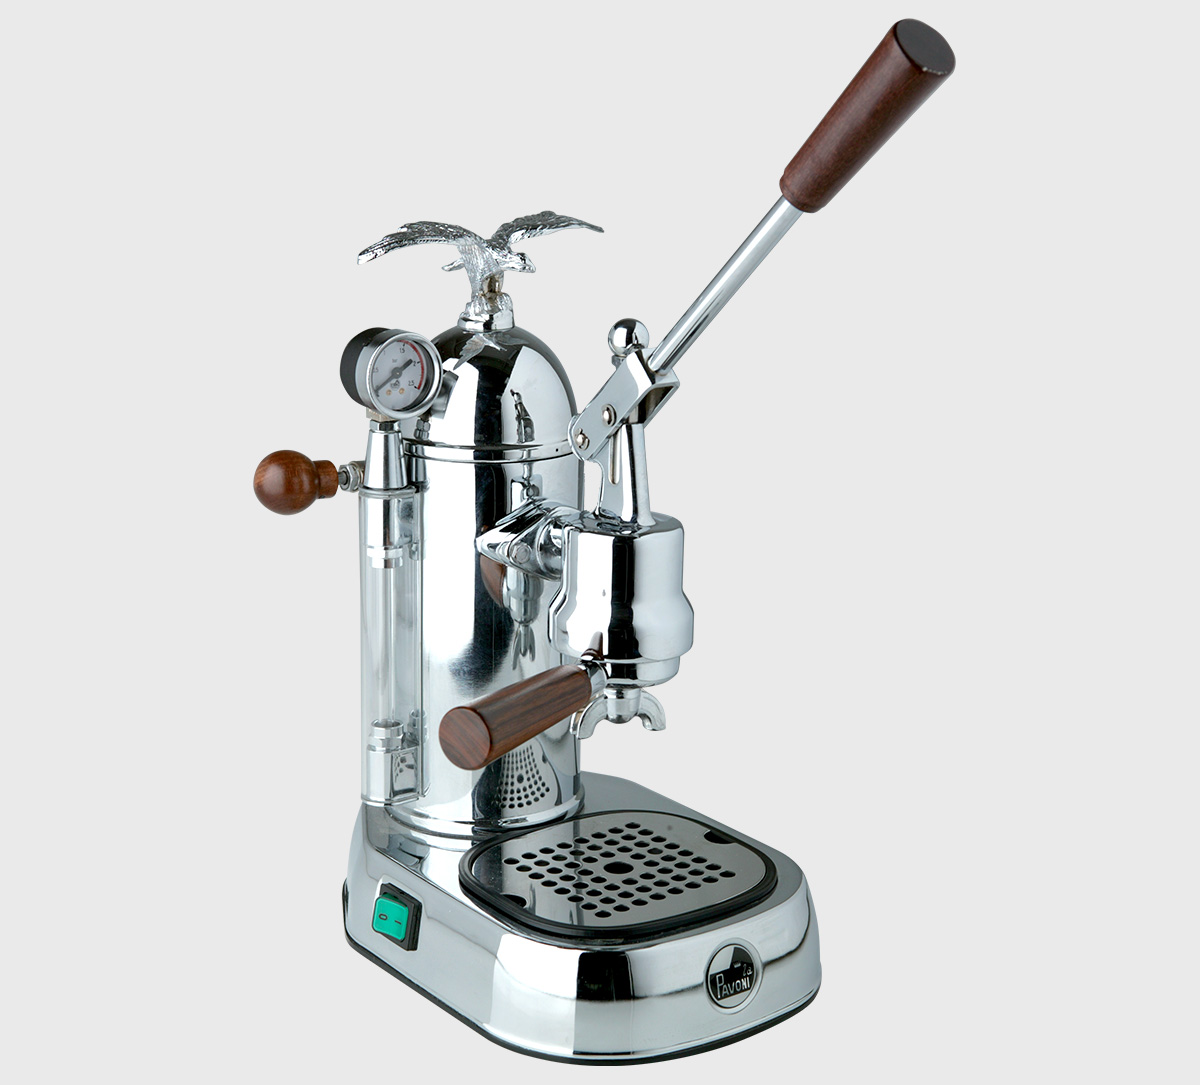 Smeg Acquires Classic Italian Espresso Machine Maker La